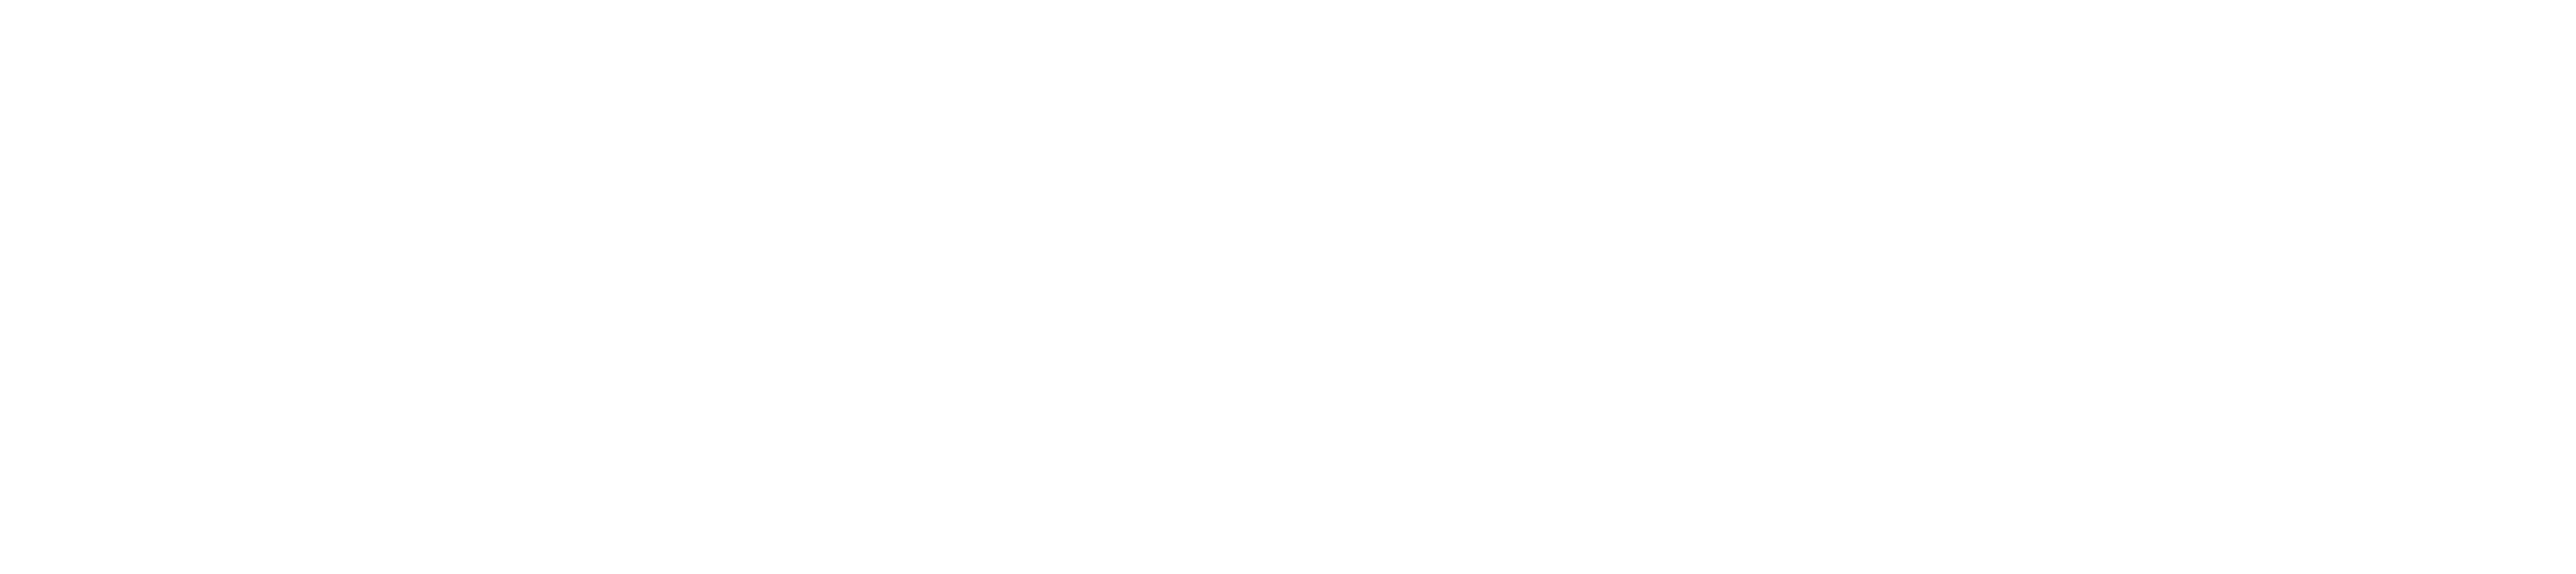 Students' Union Council